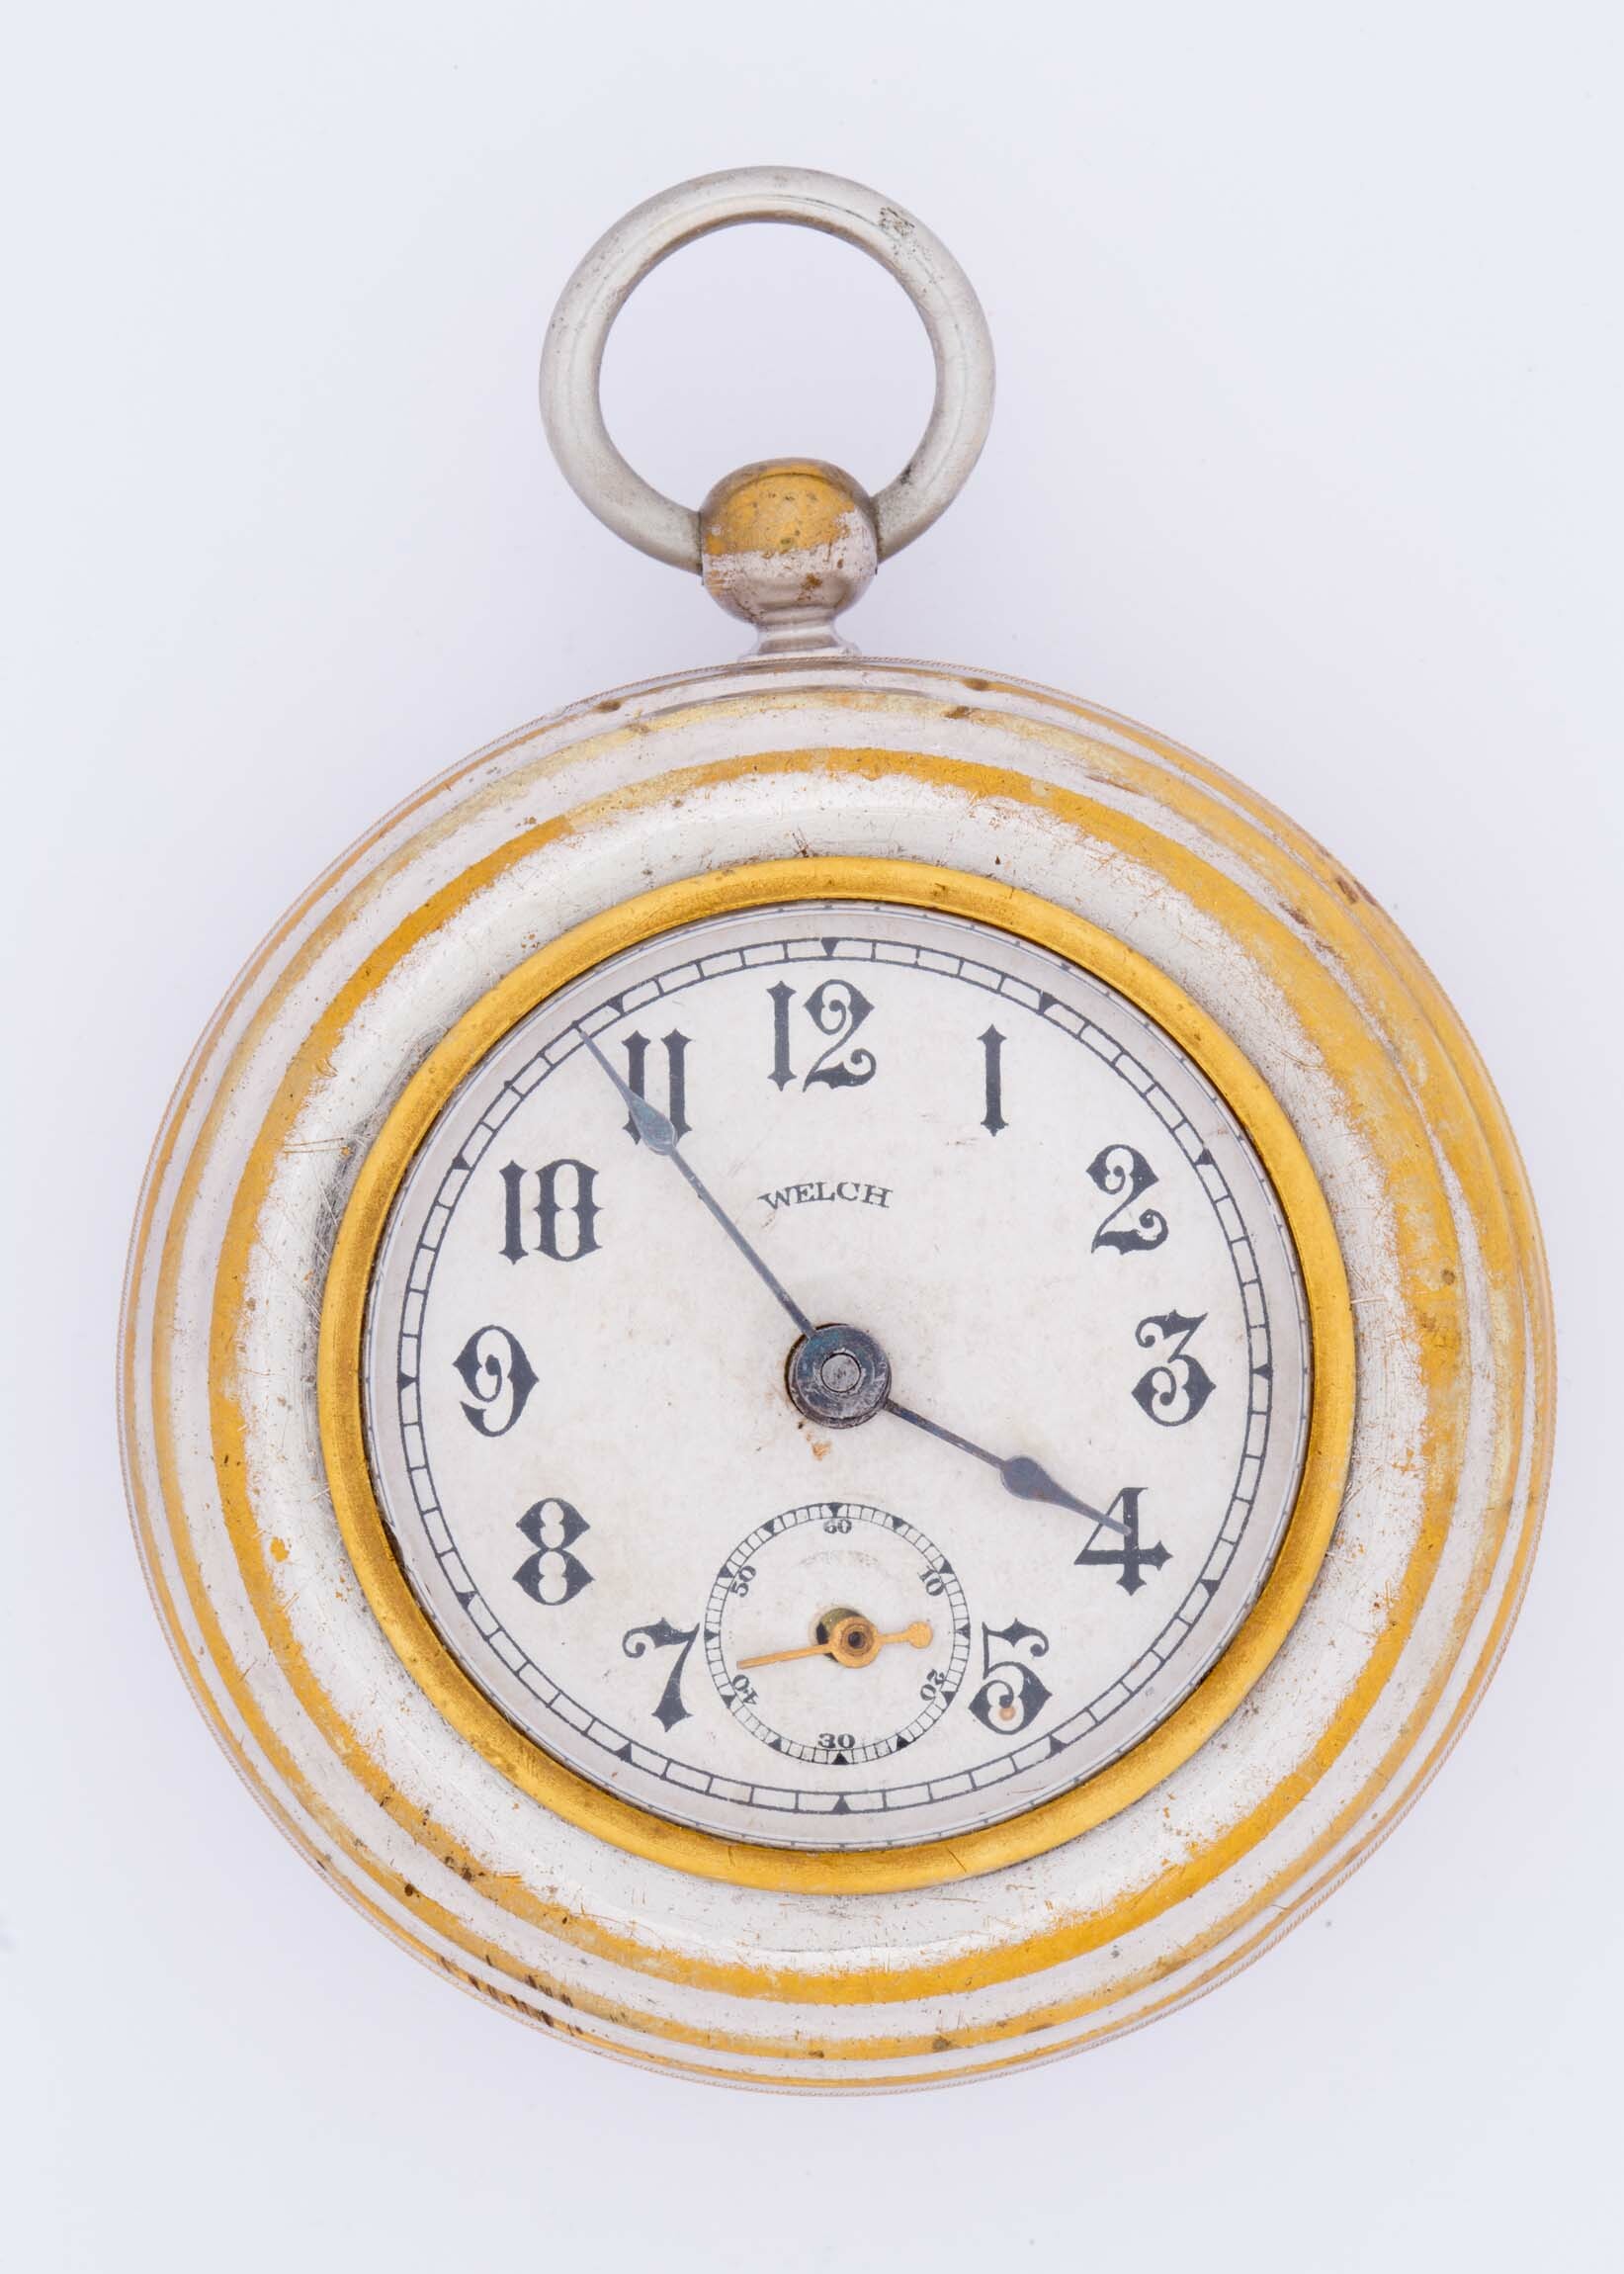 Taschenuhr Welch, Forestville, um 1890 (Deutsches Uhrenmuseum CC BY-SA)